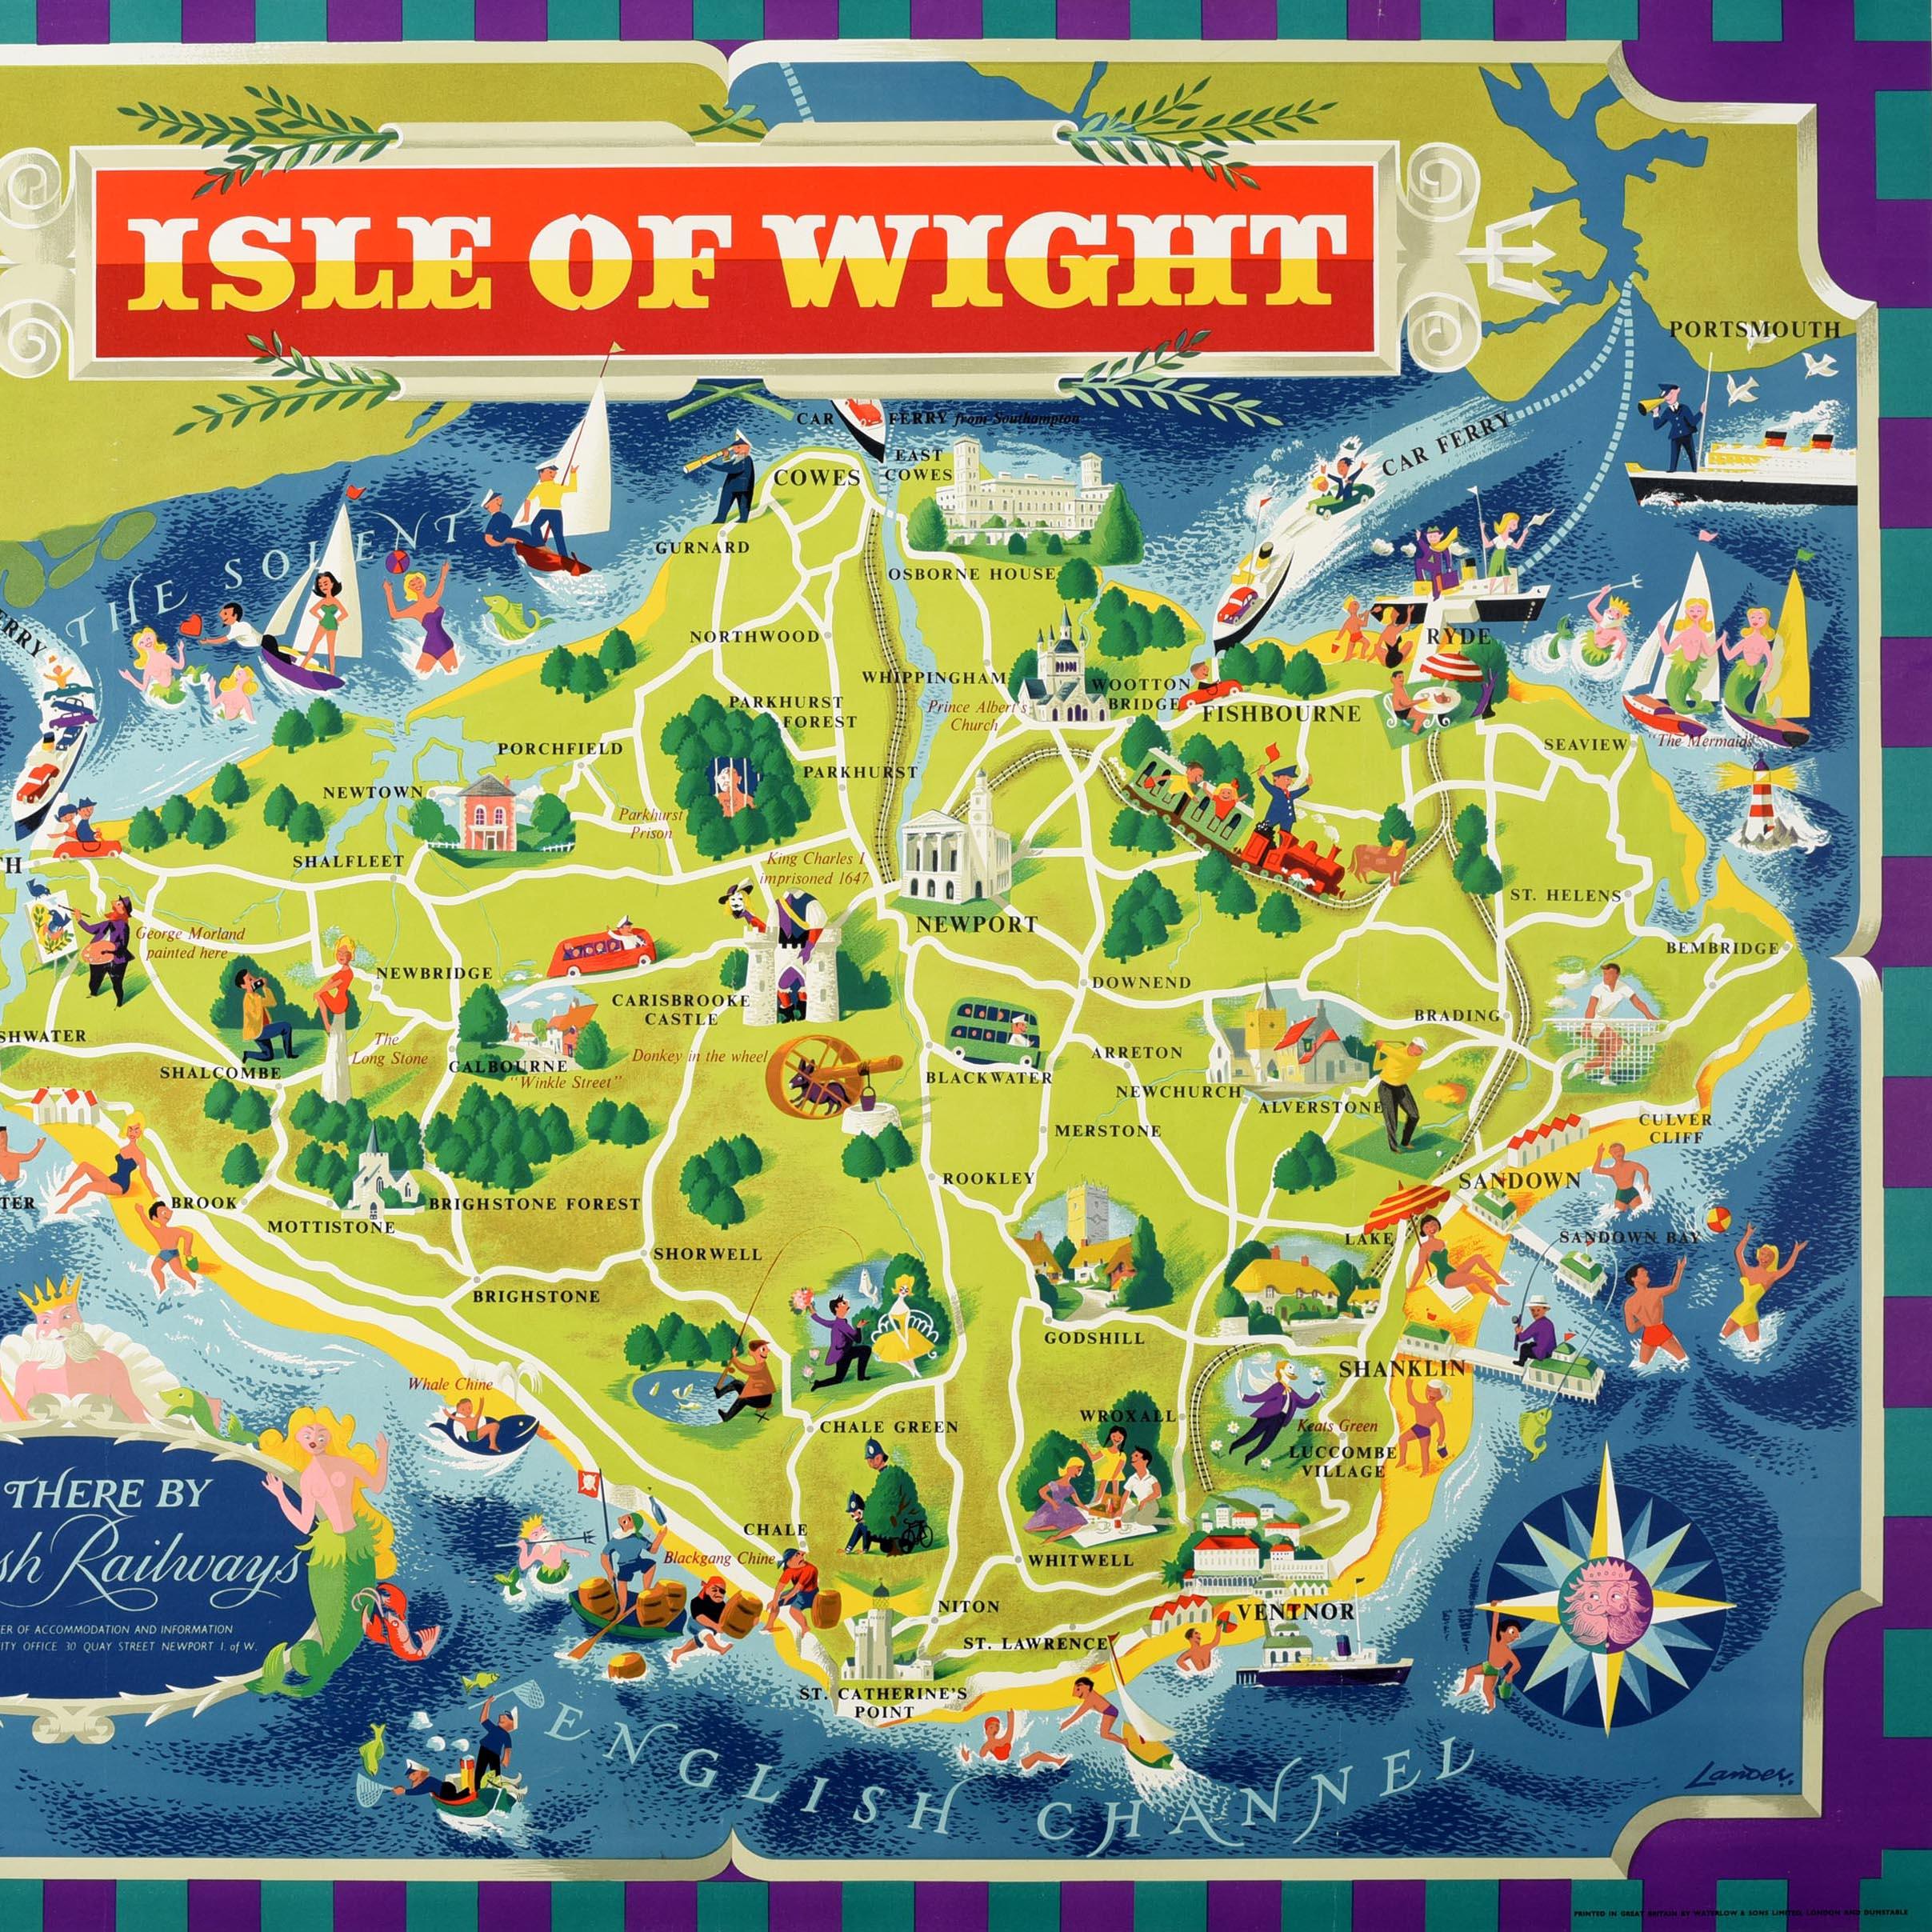 Original affiche de voyage vintage pour l'île de Wight Go There By British Railways - Southern Region. Grande carte picturale réalisée par le célèbre artiste commercial et concepteur d'affiches Reginald Montague Lander (1913-1980) présentant des